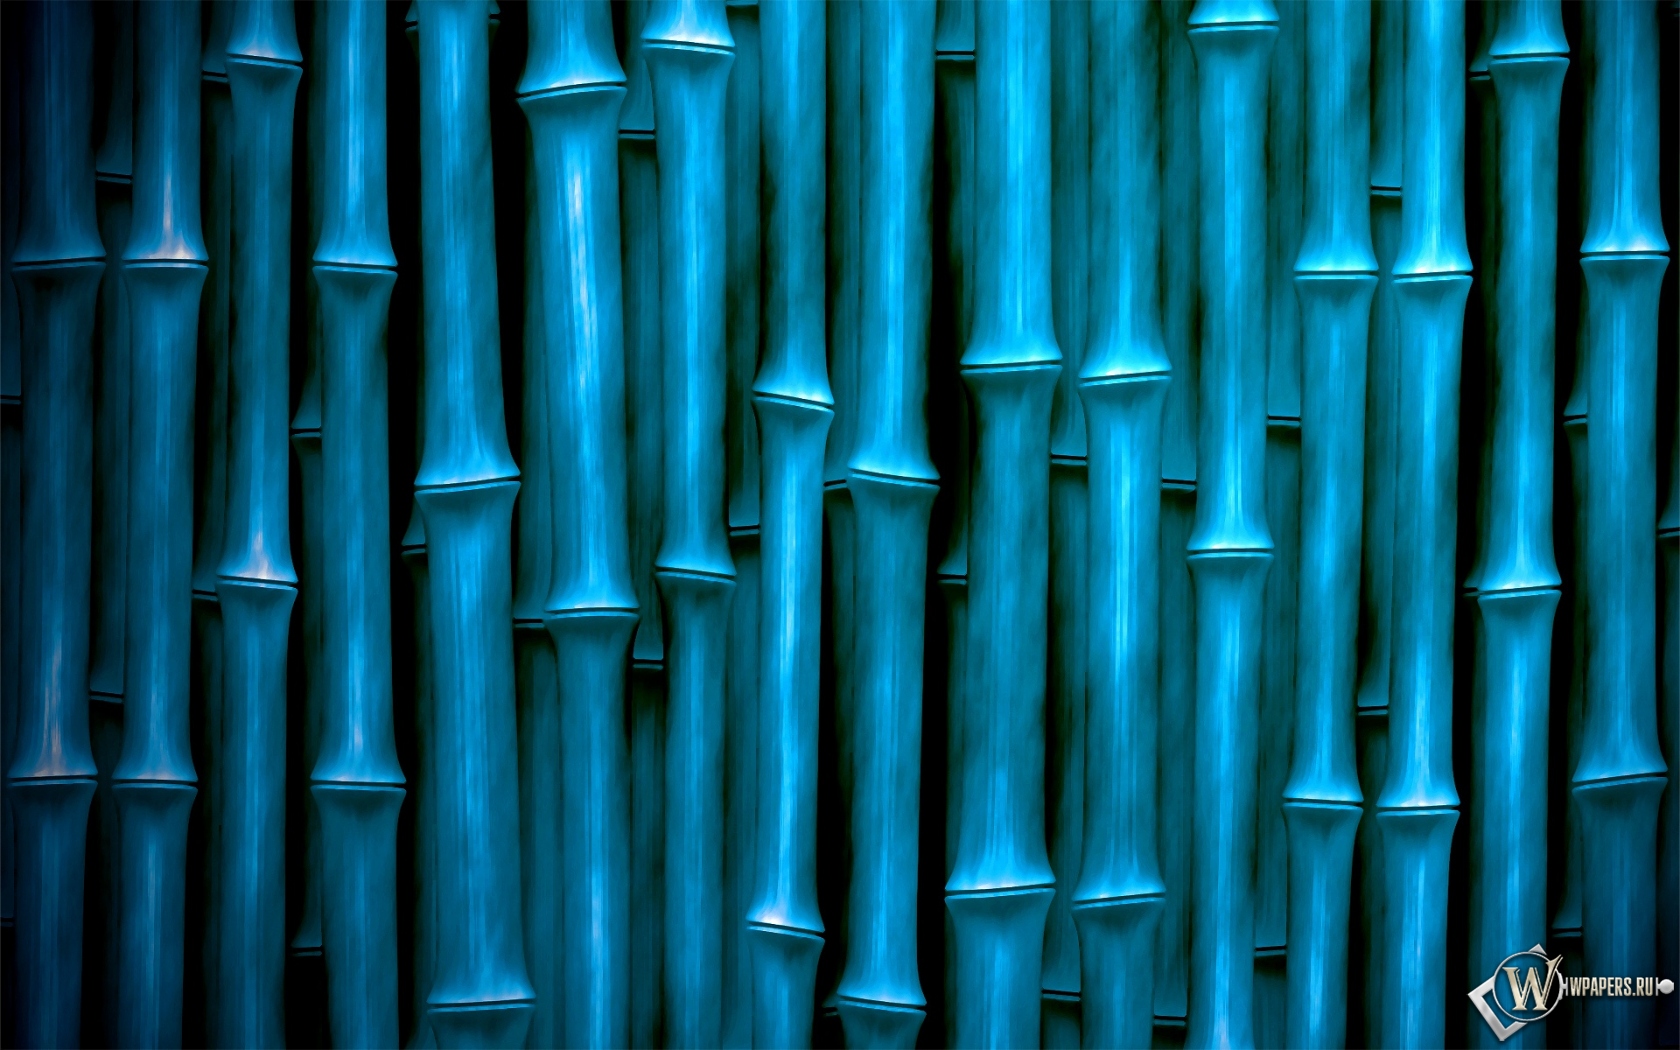 Бамбуковые трубки 1680x1050